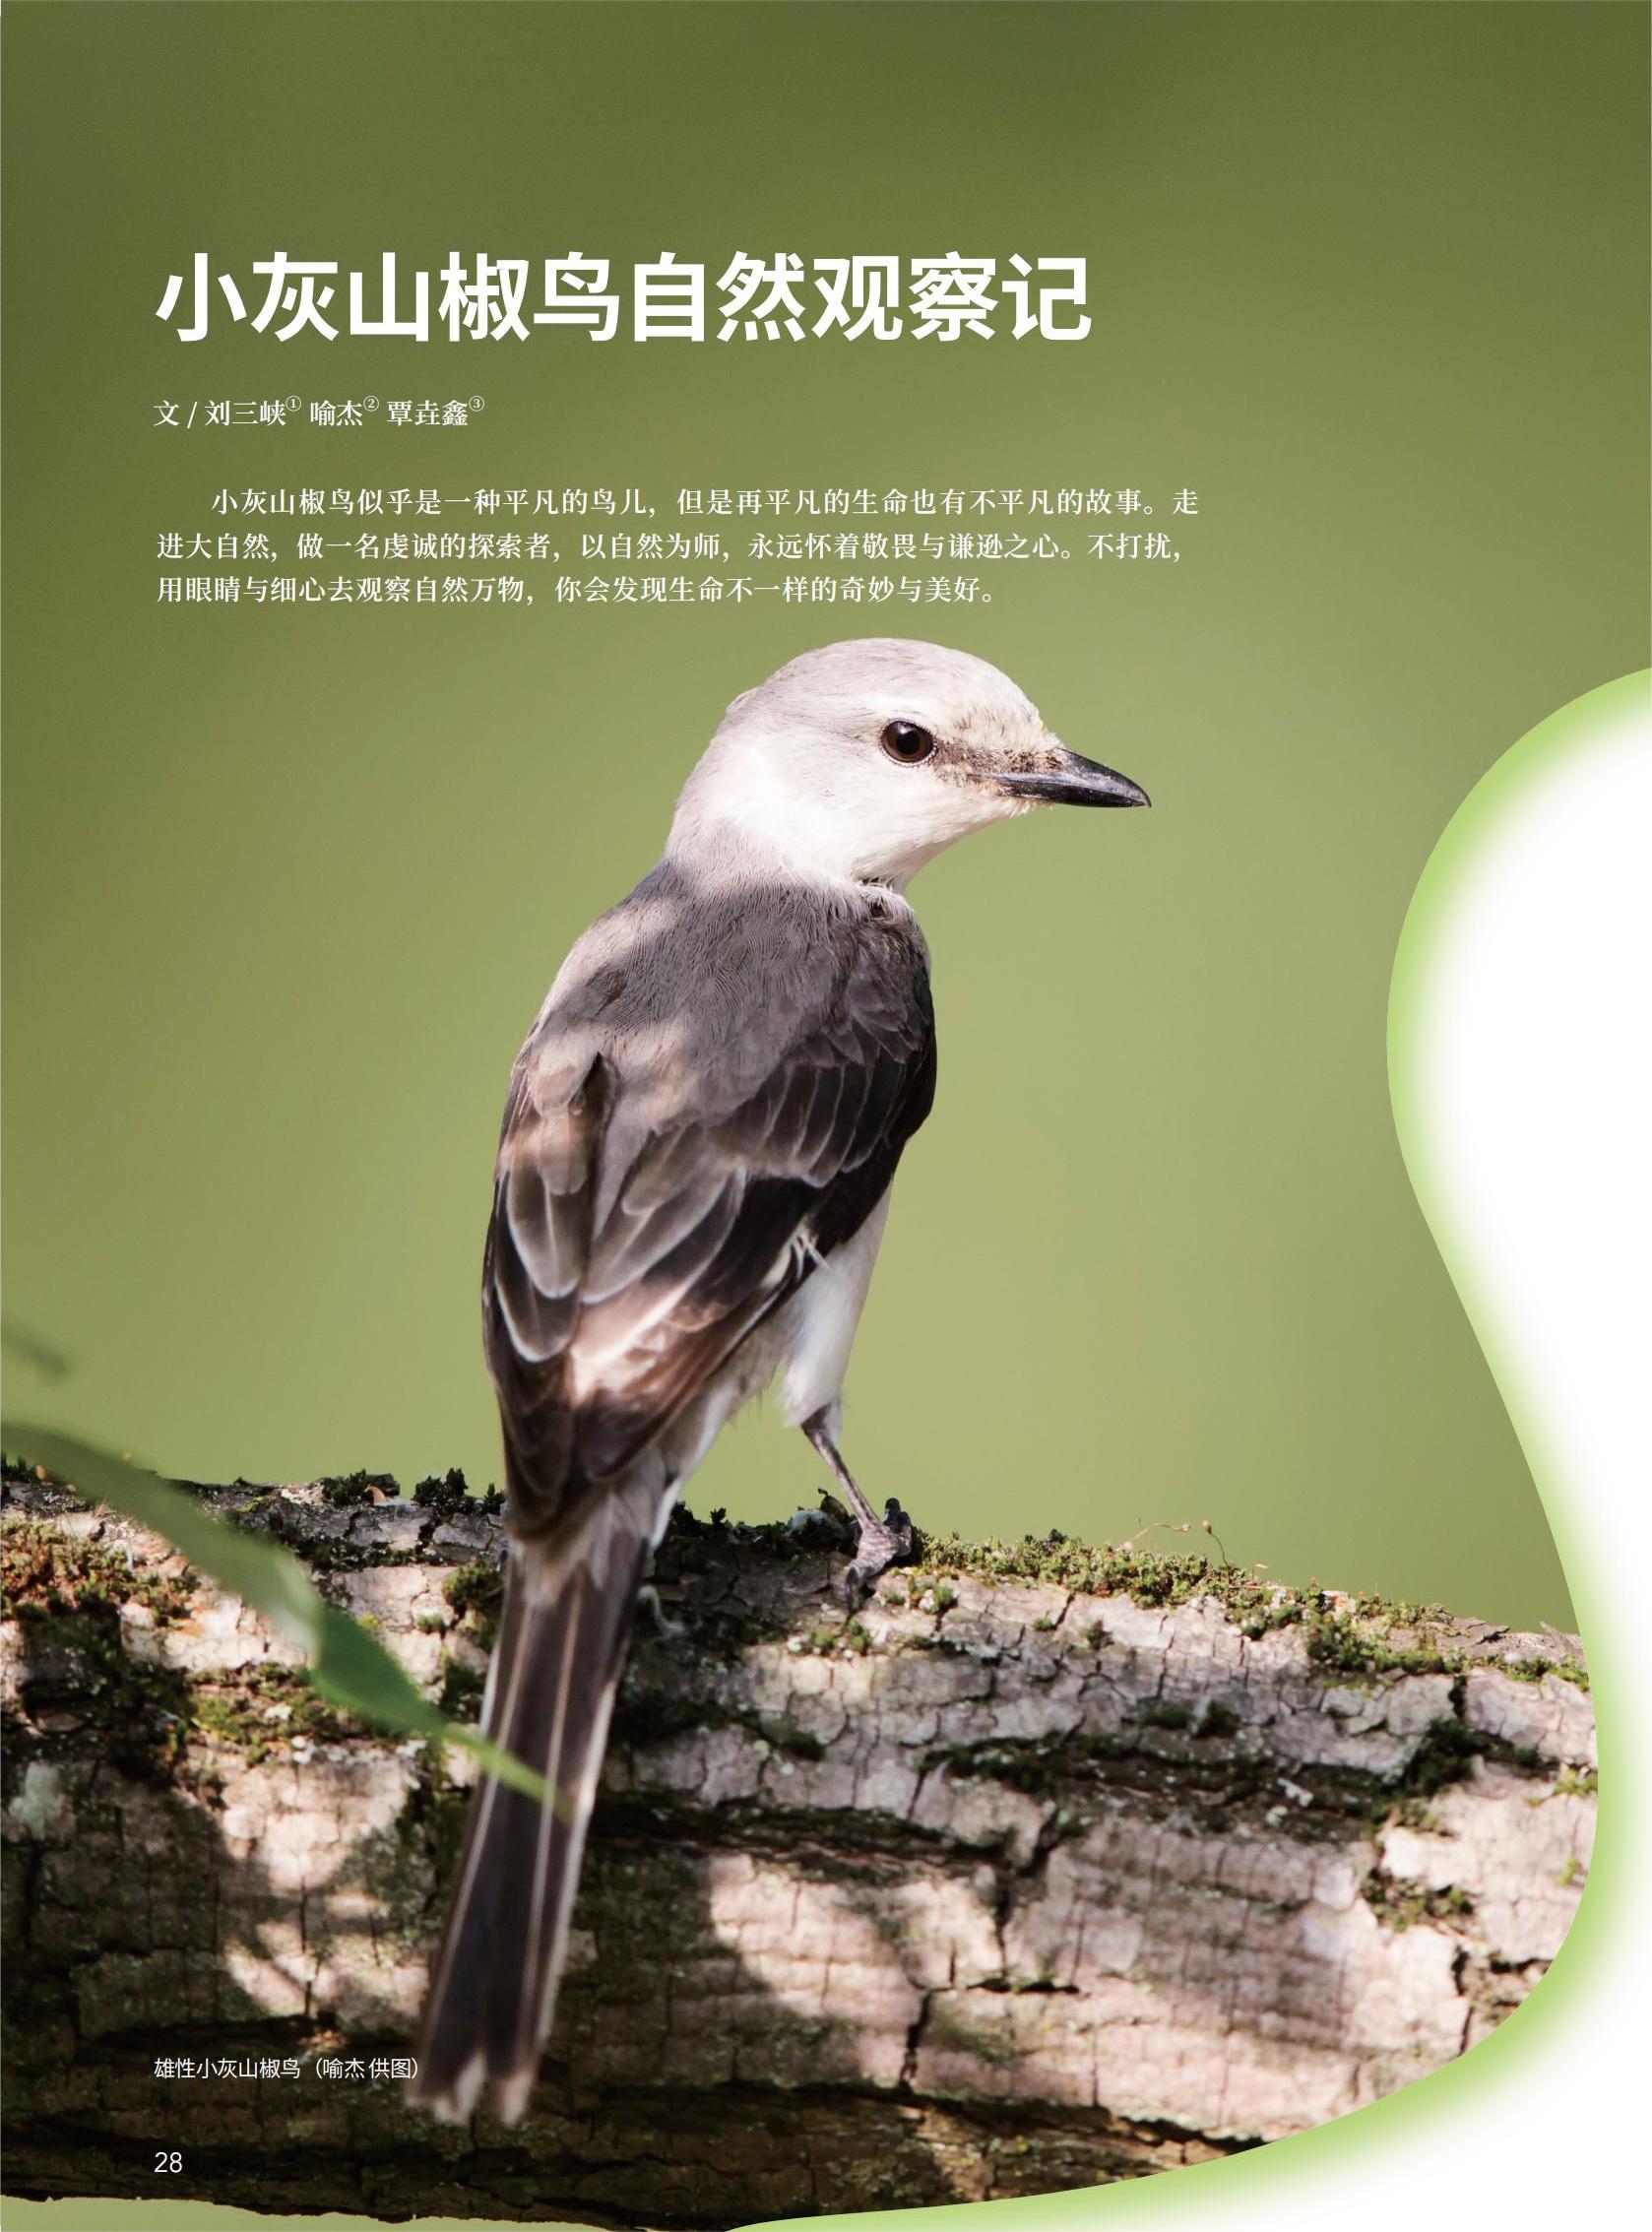 28小灰山椒鸟自然观察记-刘三峡 喻杰 覃垚鑫_00.jpg